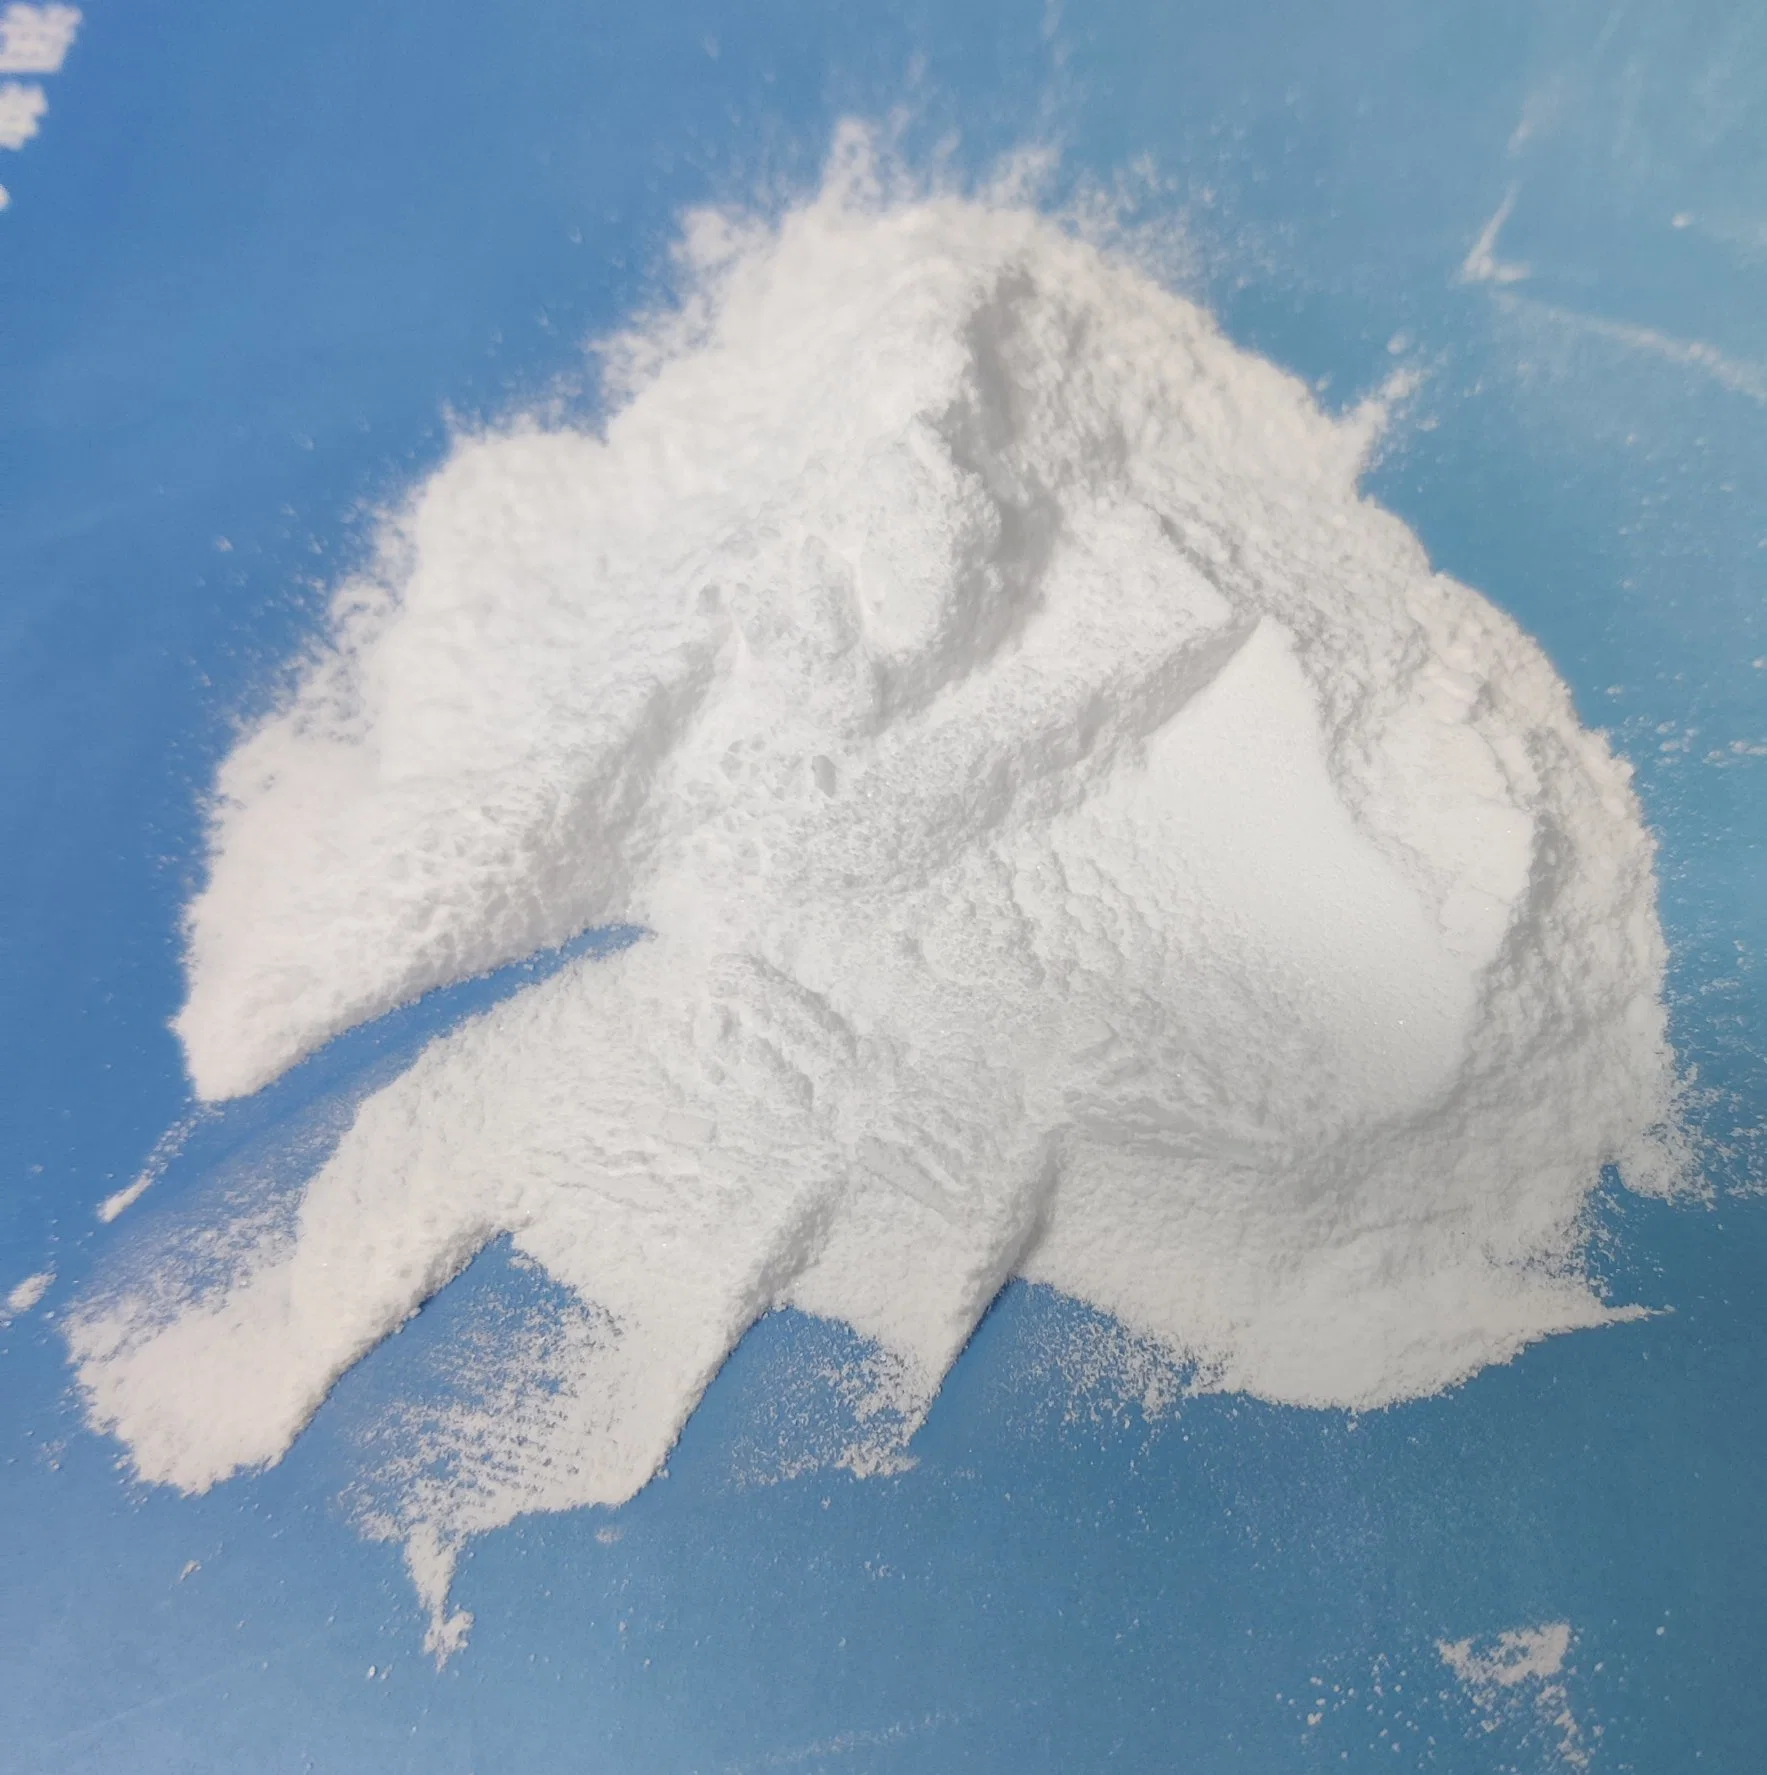 Propionato de cálcio fabricante Mupro qualidade granular e pó